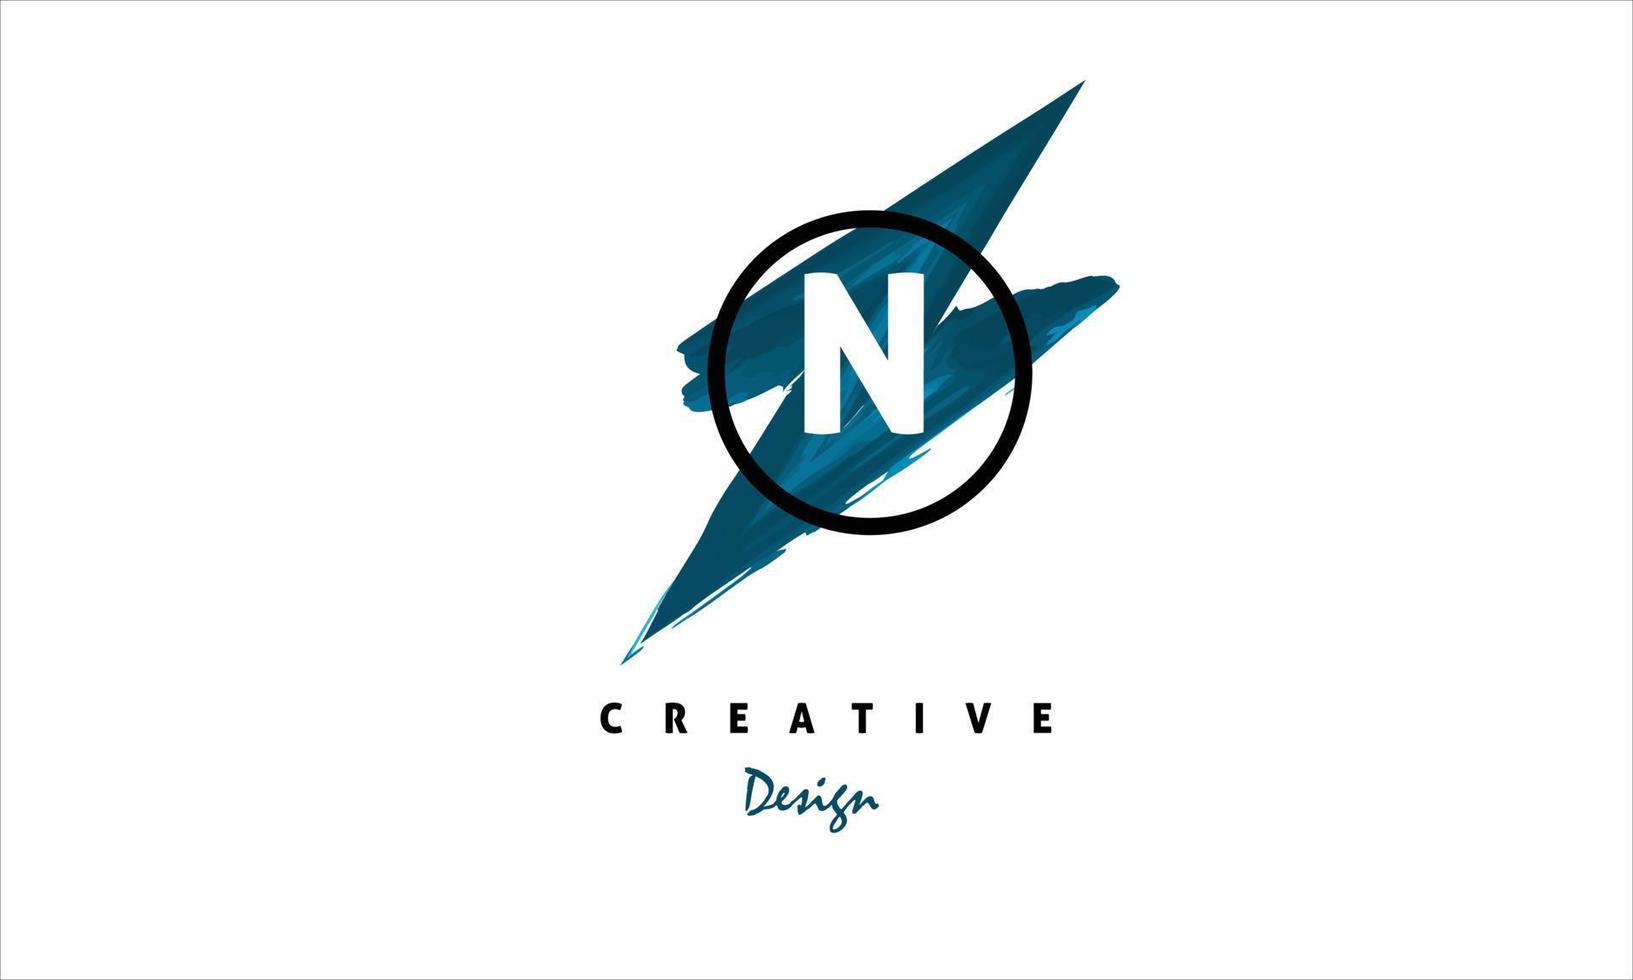 n Wasser Farbe Logo künstlerisch, schick, modisch Hand gezeichnet Vektor Design auf grau Hintergrund.